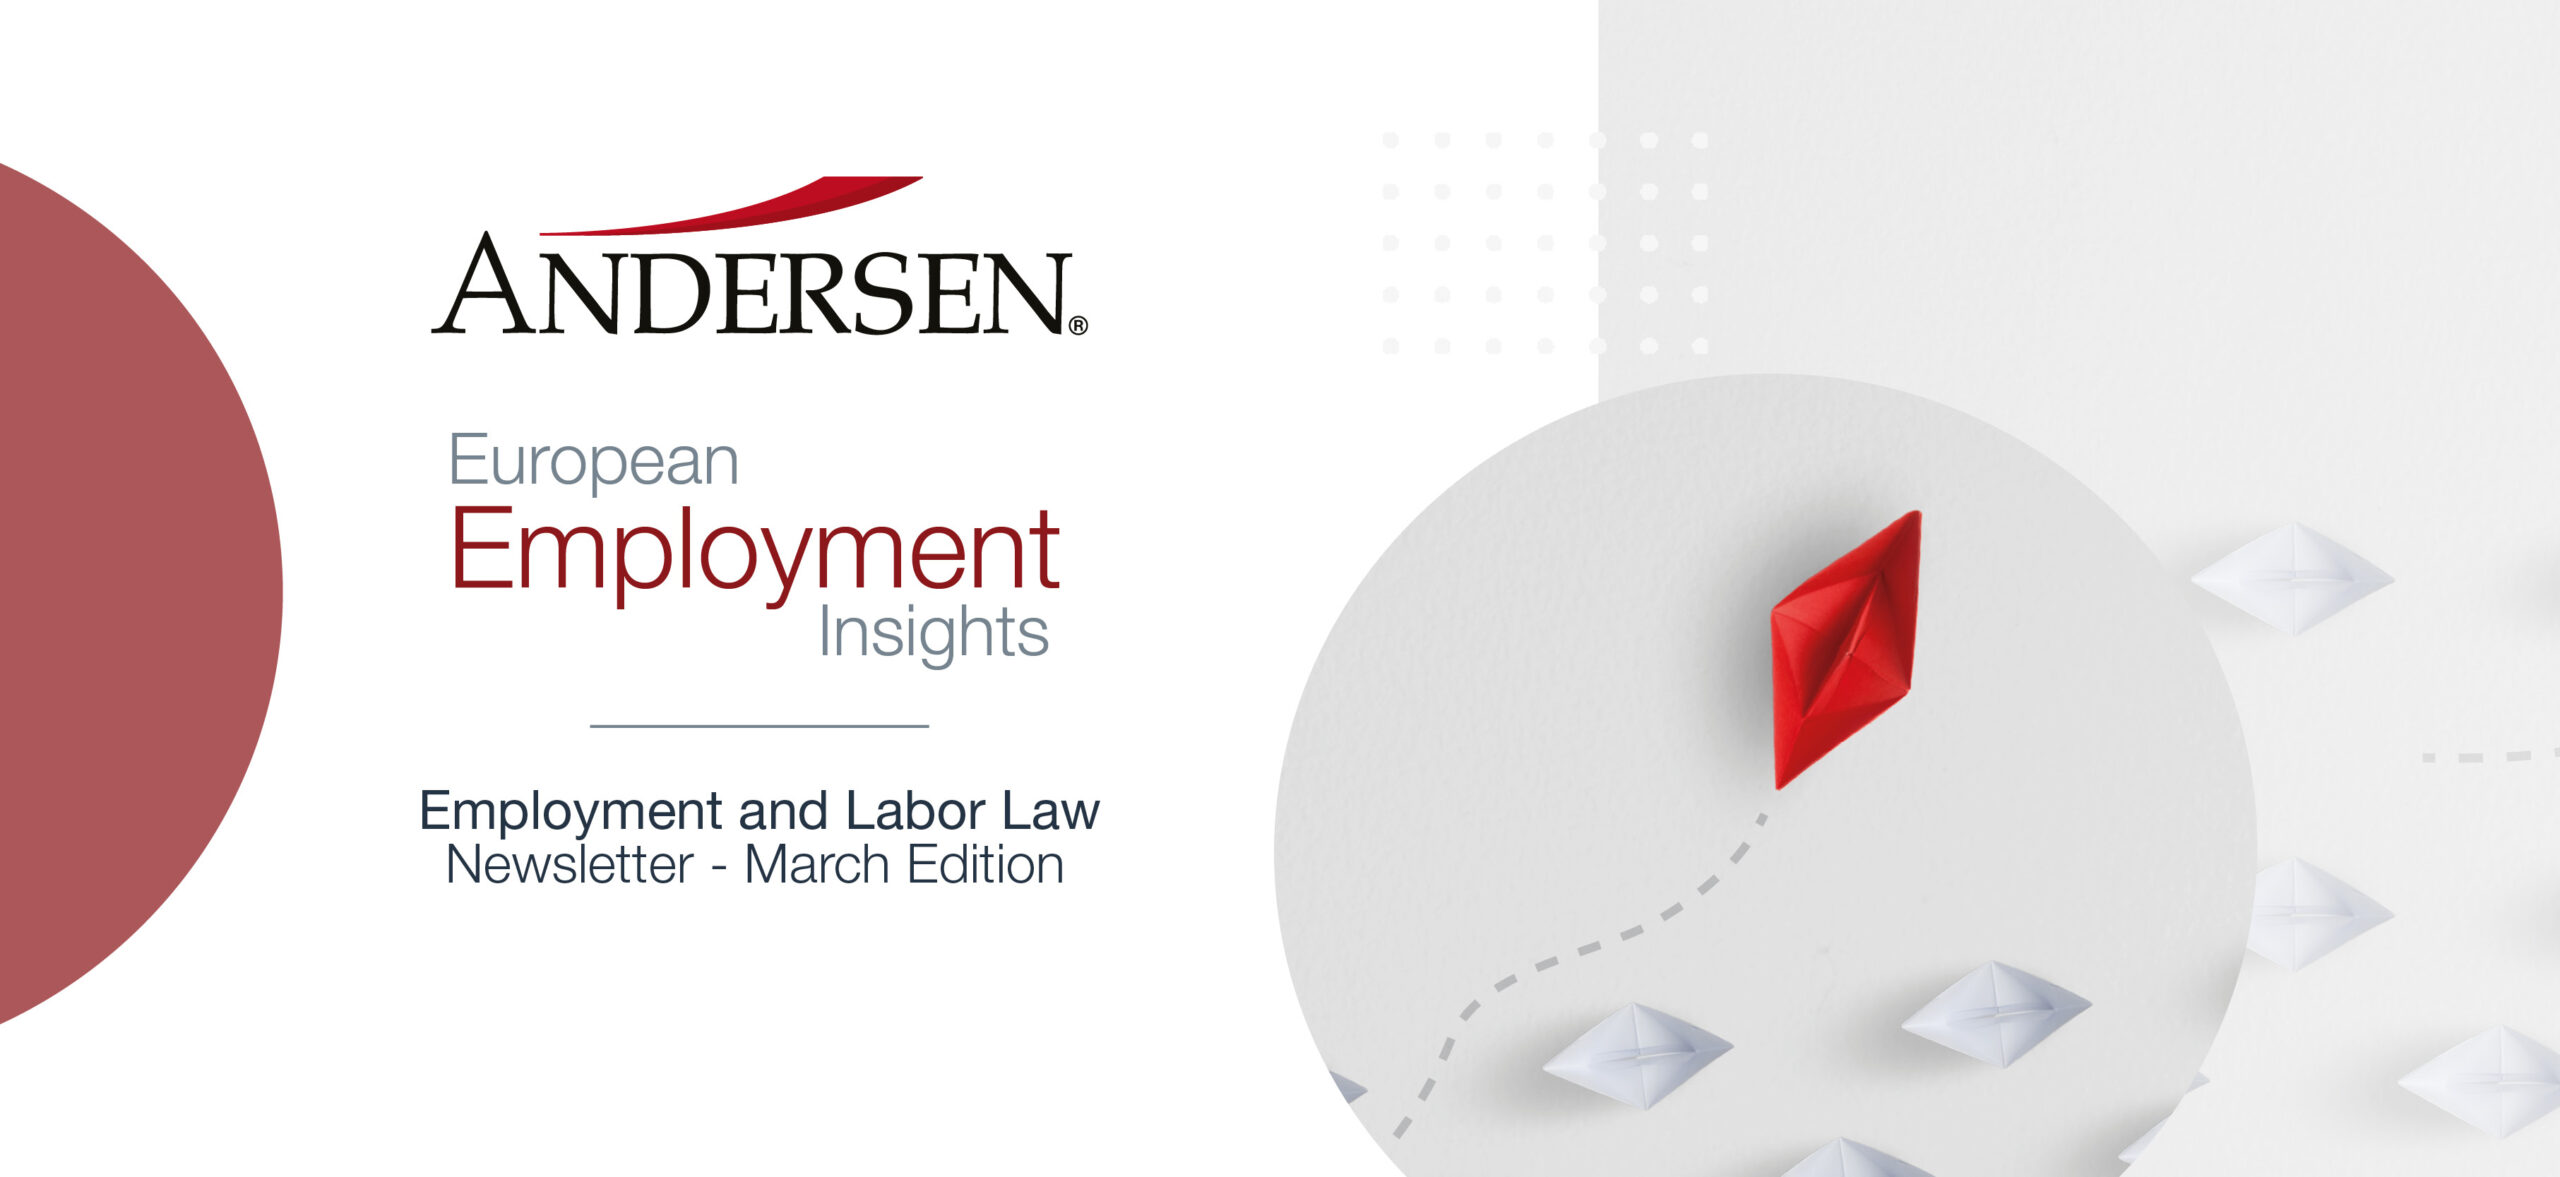 Andersen-EuropeanEmploymentInsights